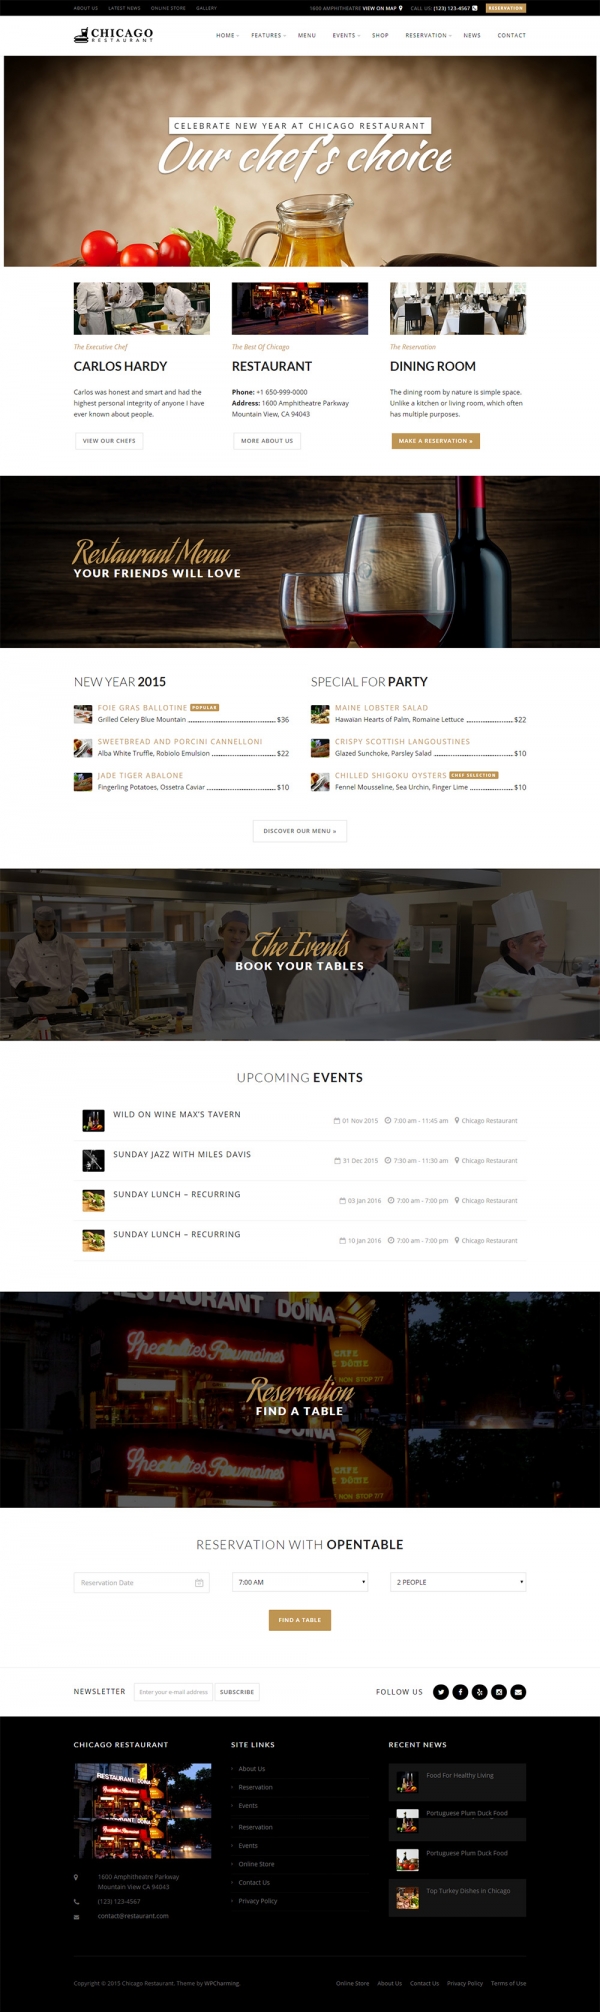 Mẫu website nhà hàng Chicago mang phong cách nước ngoài